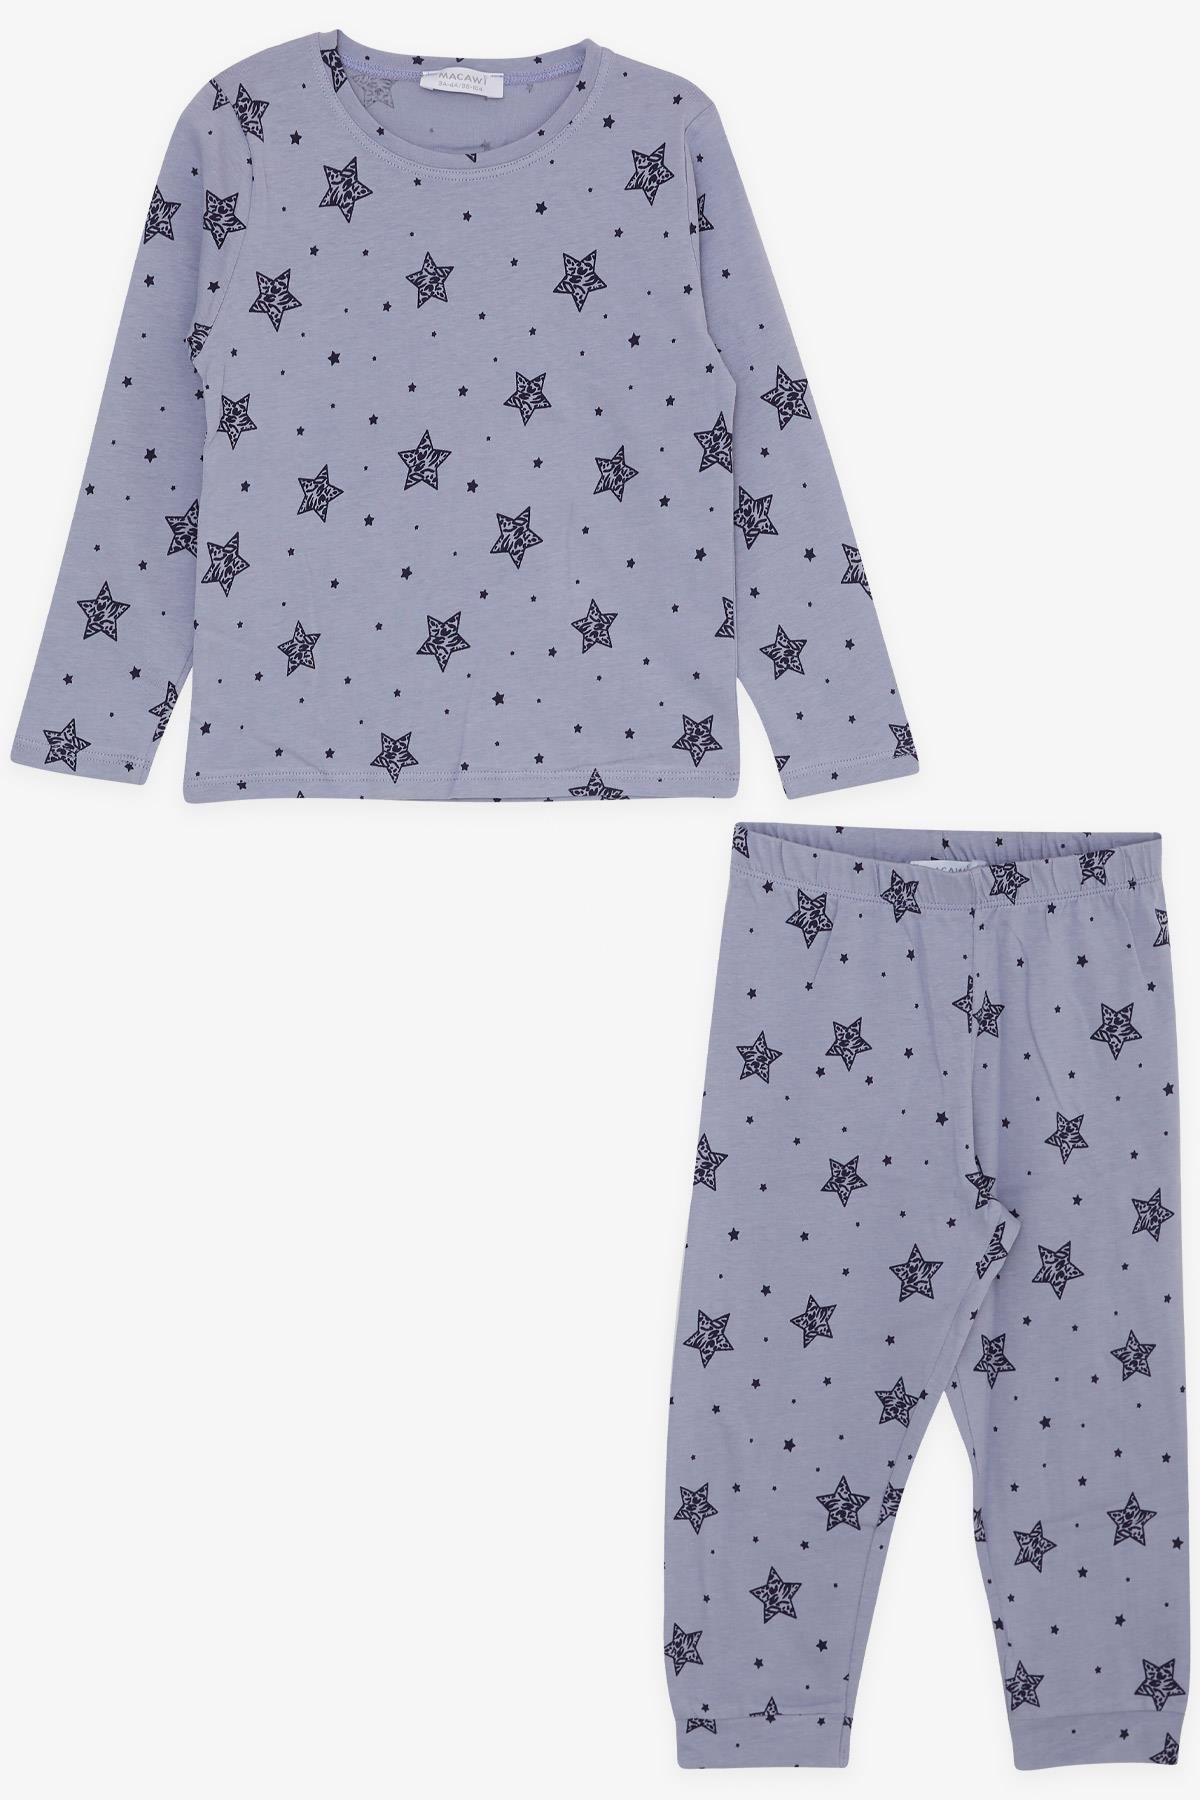 Macawi BREEZE Kız Çocuk Pijama Takımı Yıldız Desenli 1.5-5 Yaş, Lila